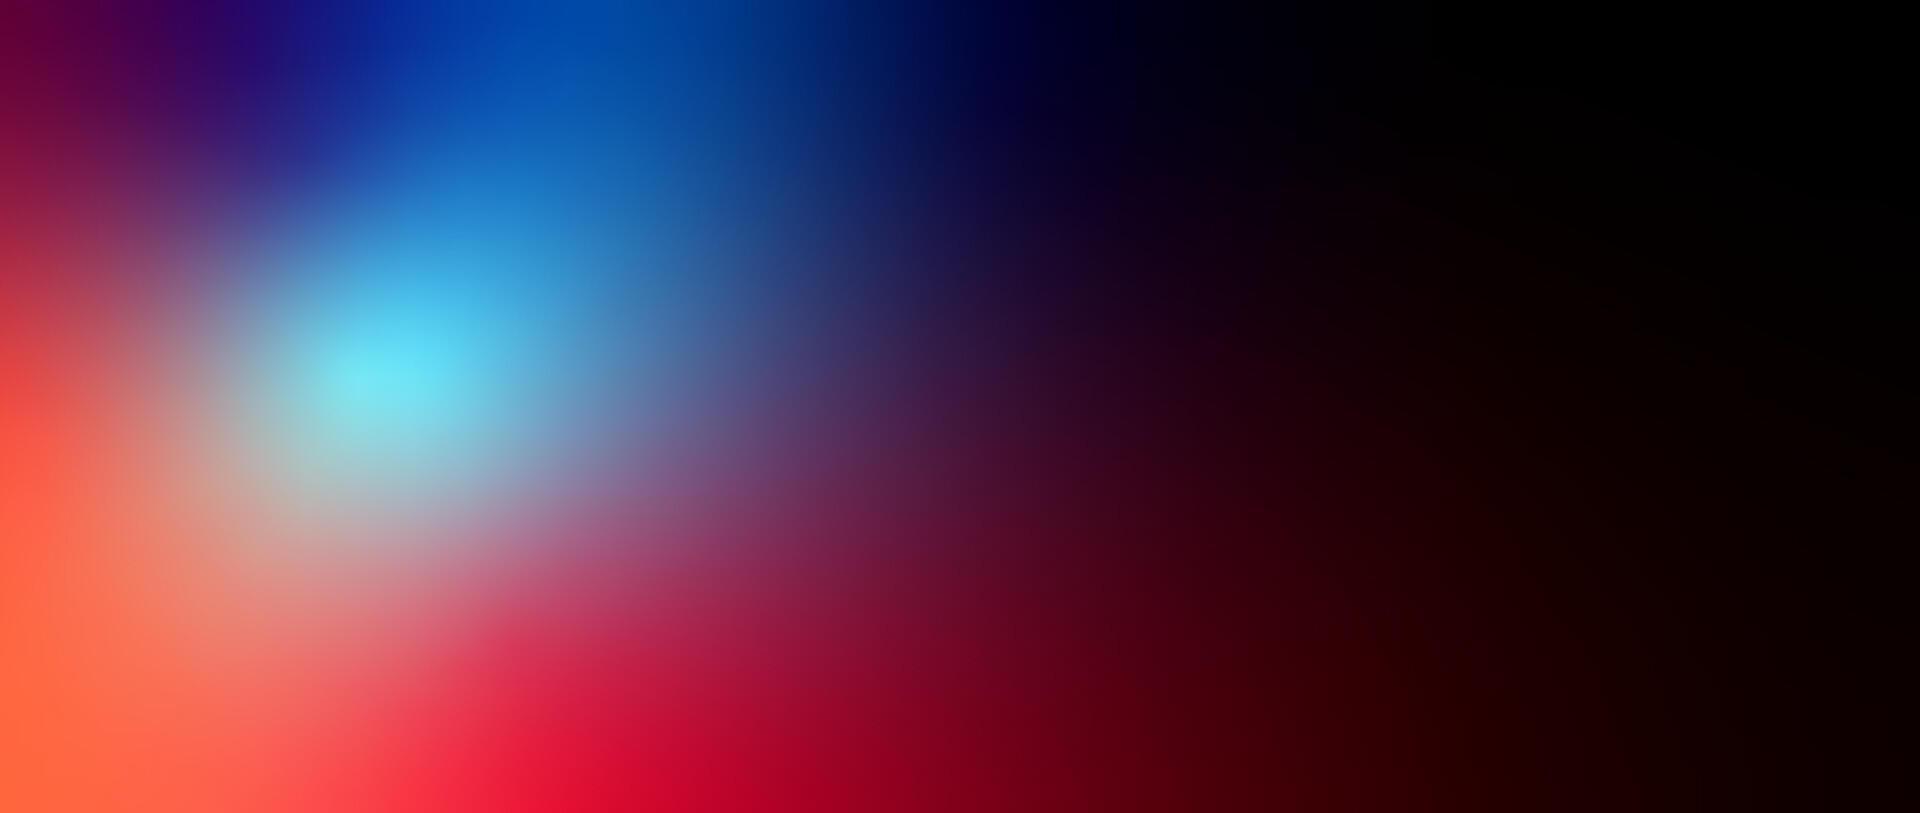 abstrakt suddig färggradient bakgrund vektor